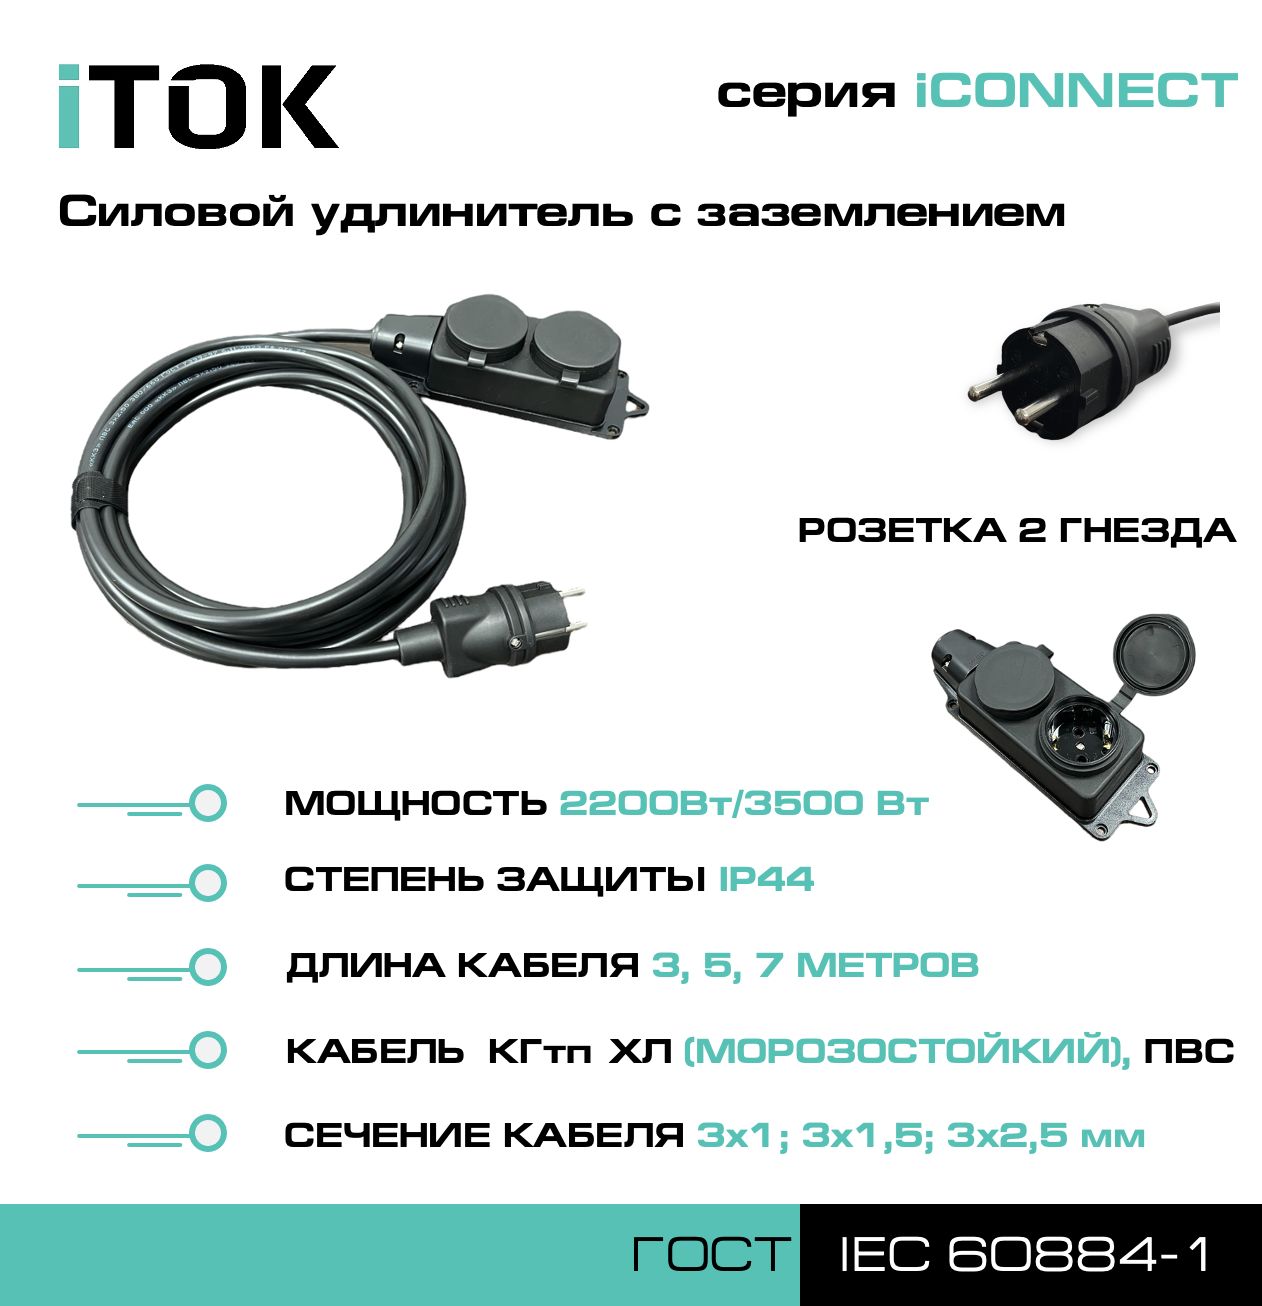 Удлинитель с заземлением серии iTOK iCONNECT ПВС 3х2,5 мм 2 гнезда IP44 3 м